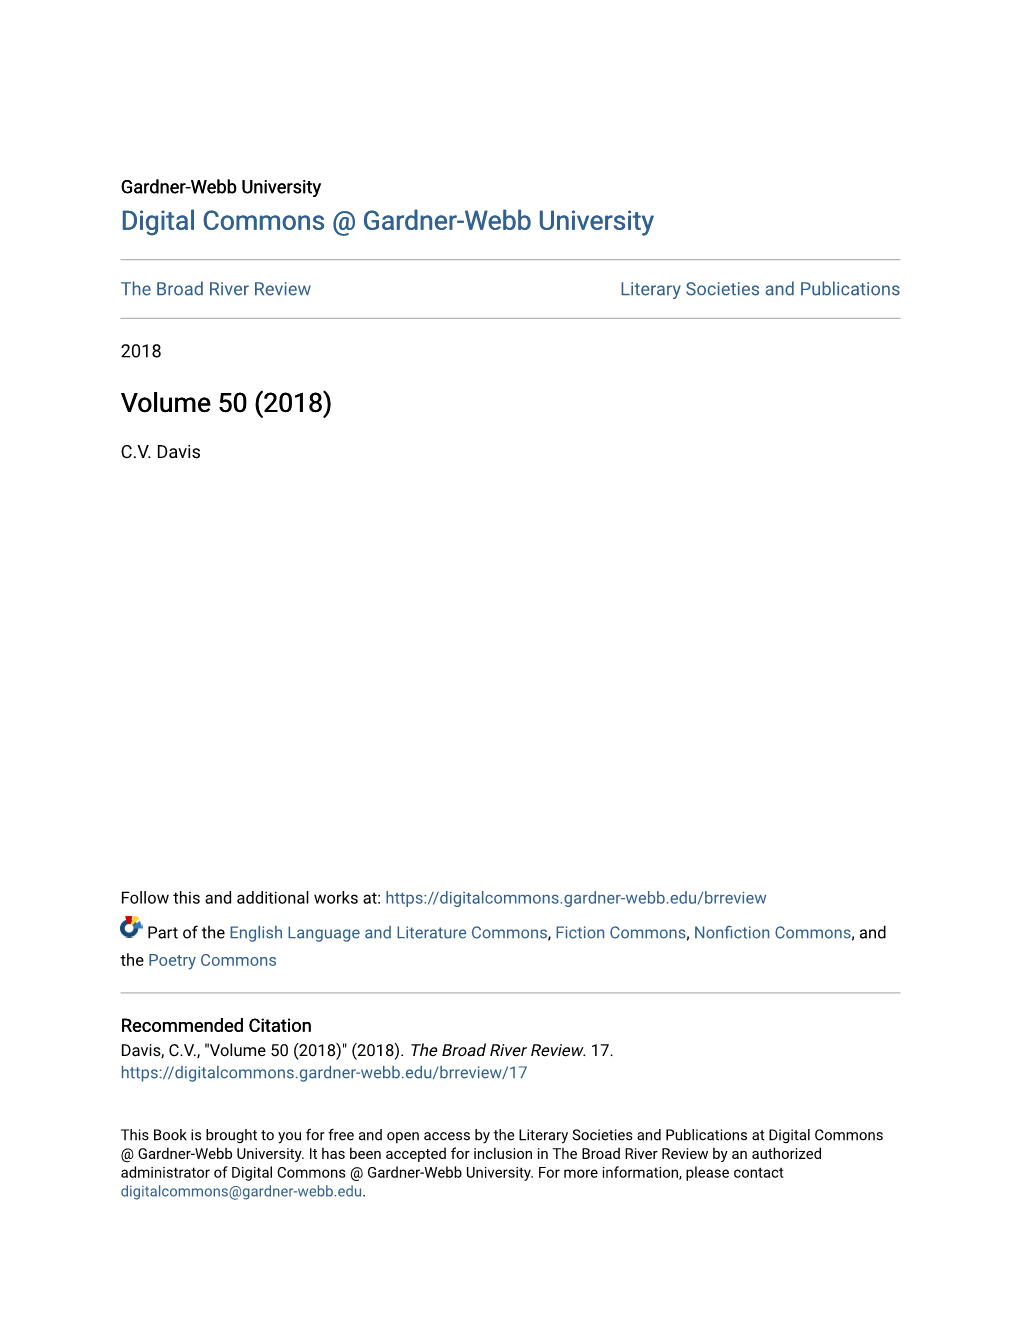 Digital Commons @ Gardner-Webb University Volume 50 (2018)